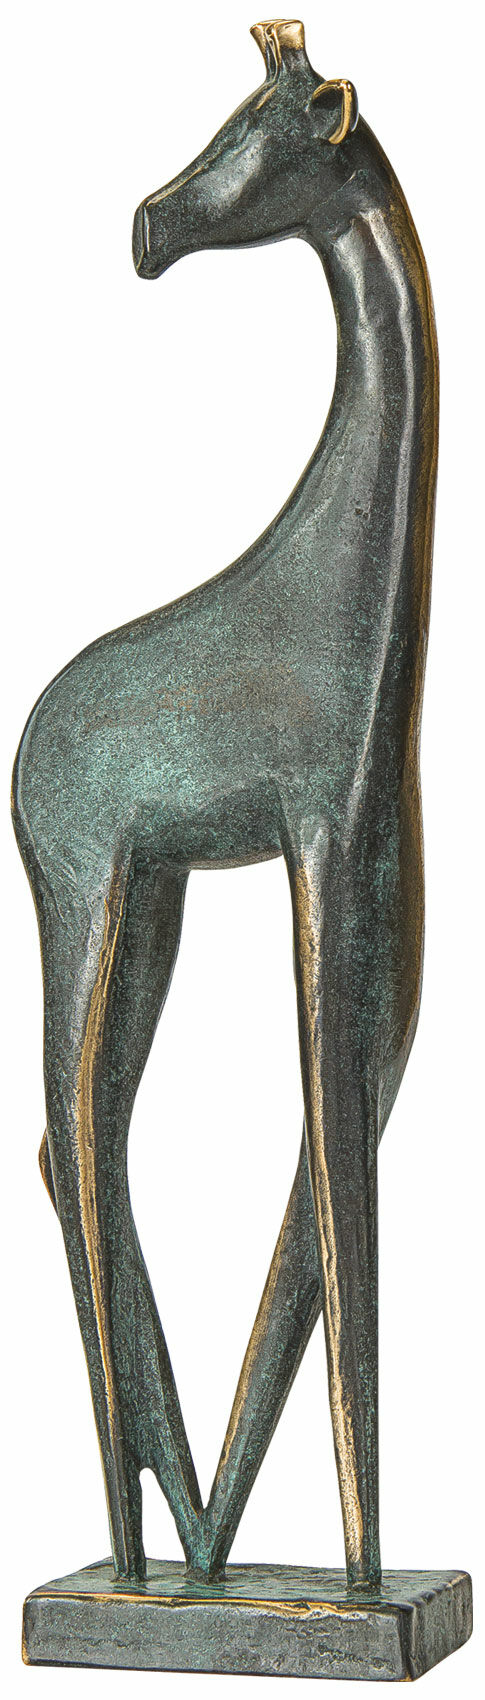 Sculpture "Girafe", bronze von Raimund Schmelter